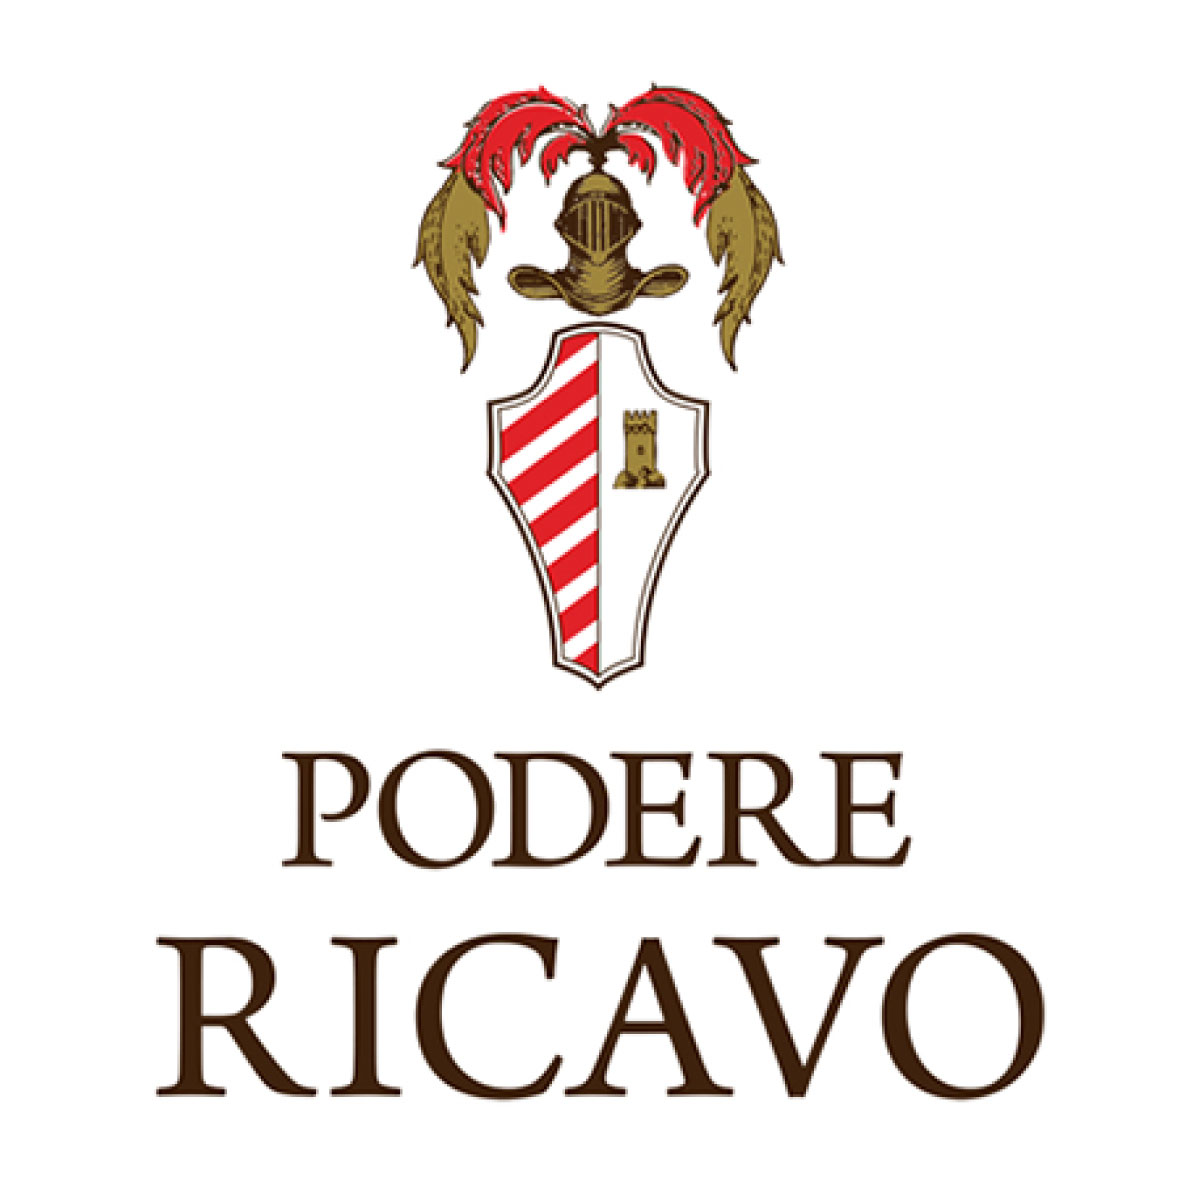 Poodere Ricavo - Olio d'oliva di tradizione